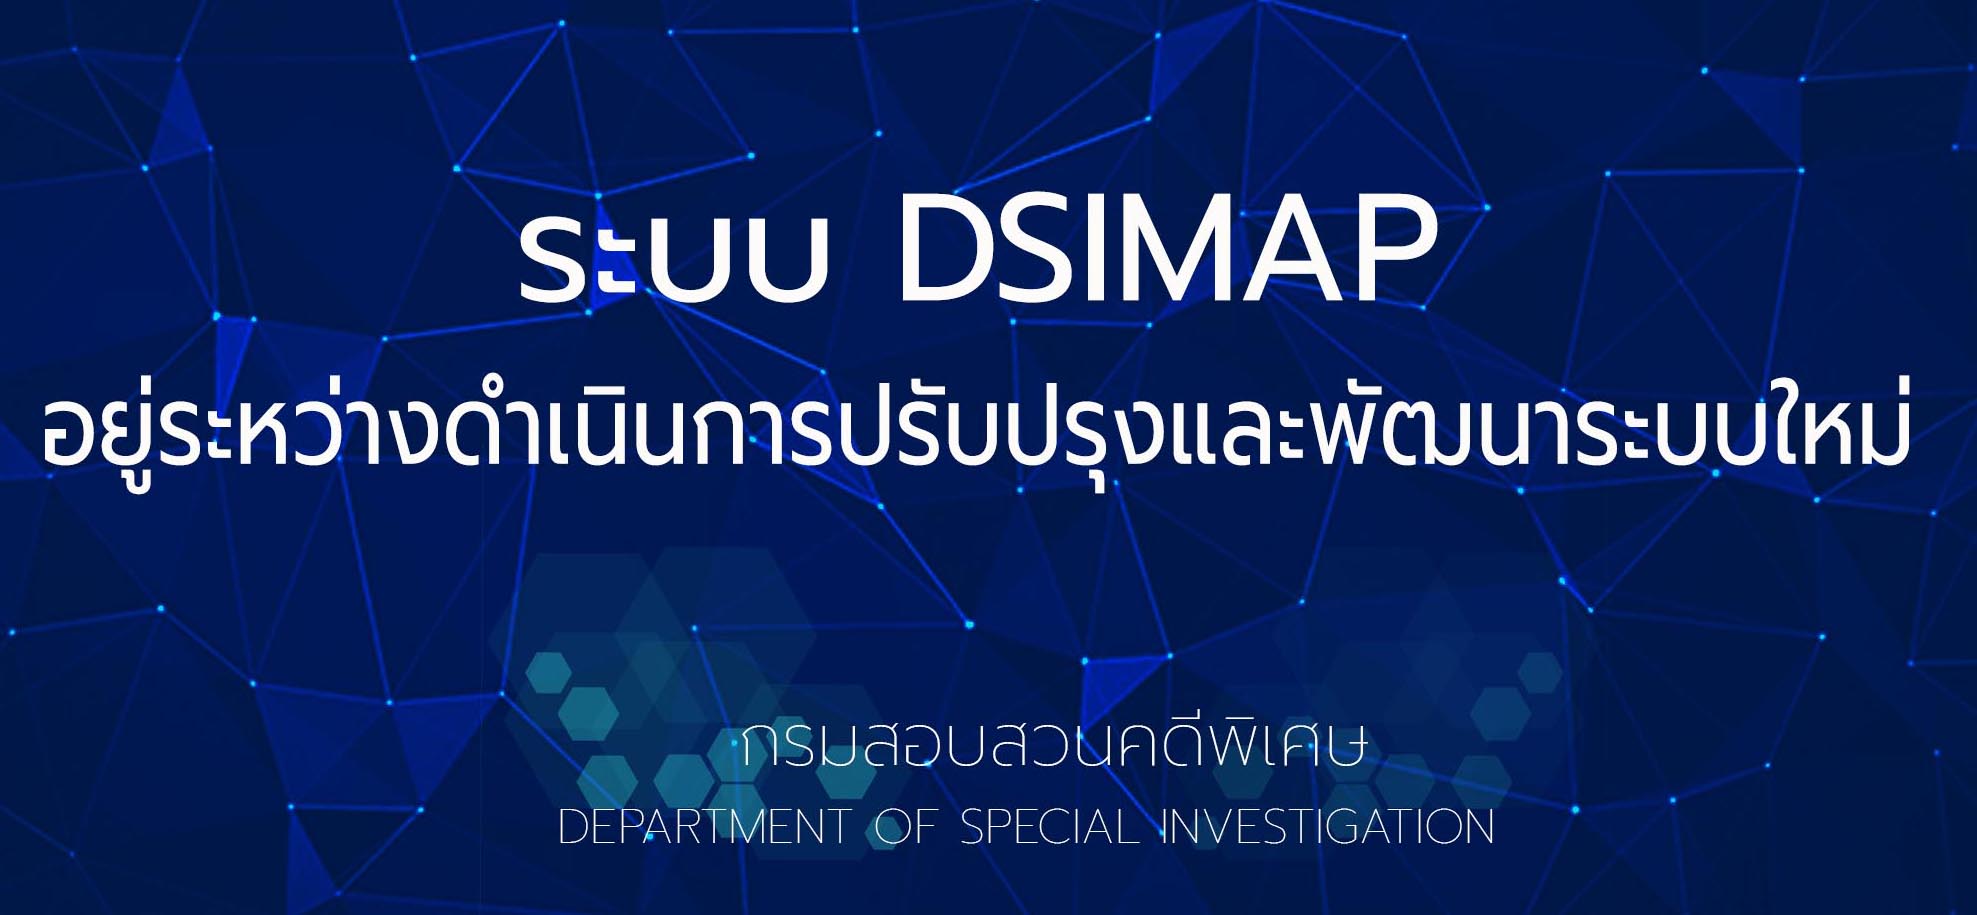 DSIMAP - กรมสอบสวนคดีพิเศษ กระทรวงยุติธรรม